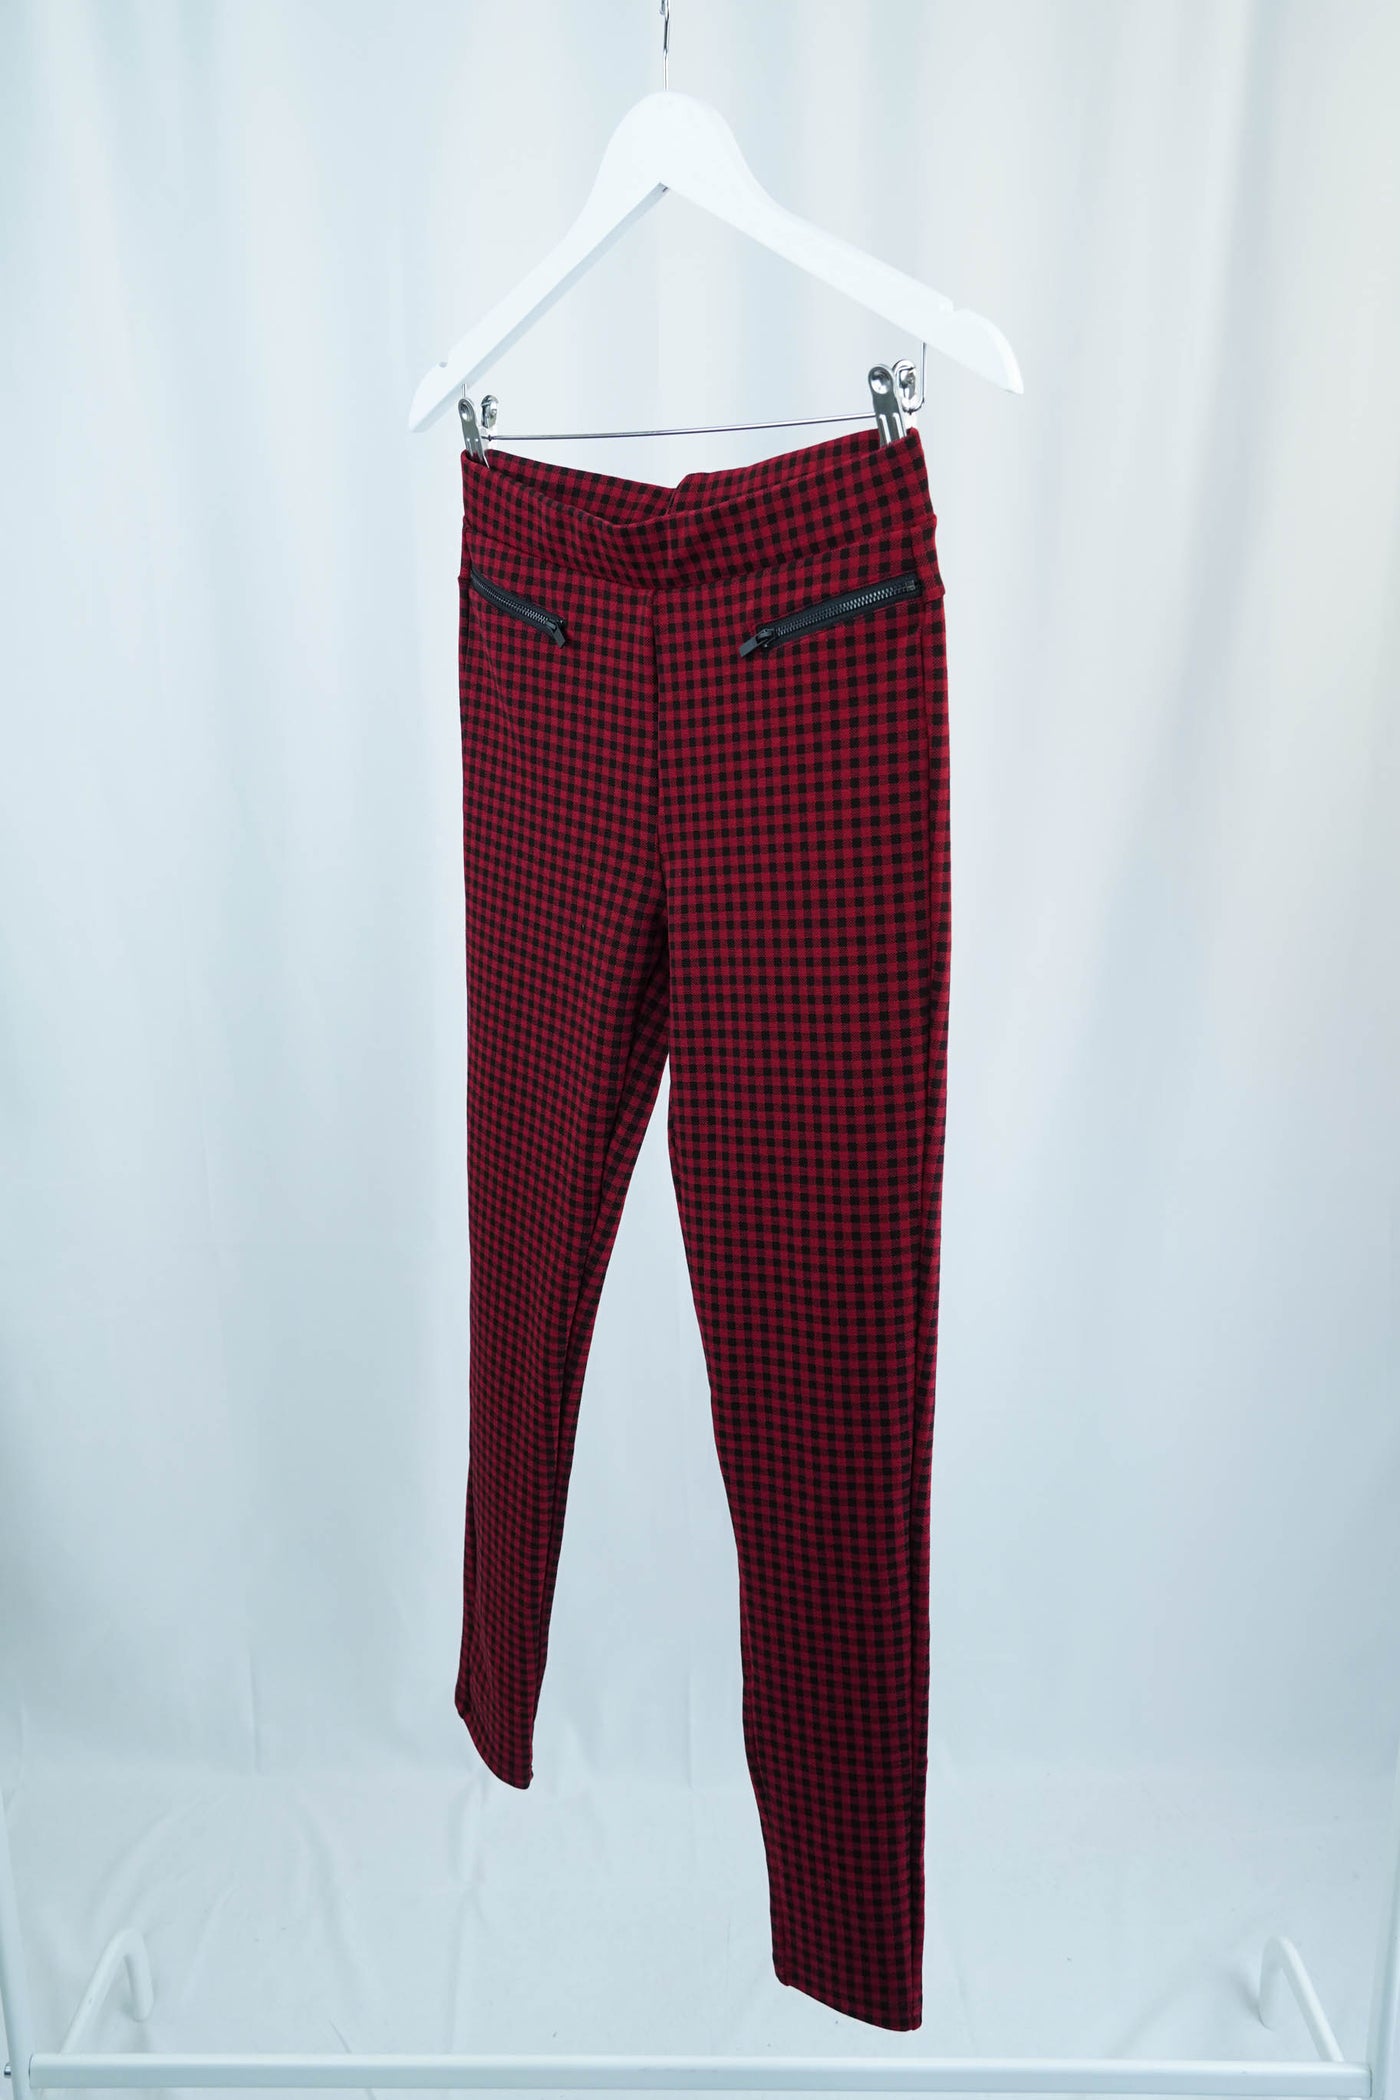 Pantalón tipo legging rojo de cuadros negros